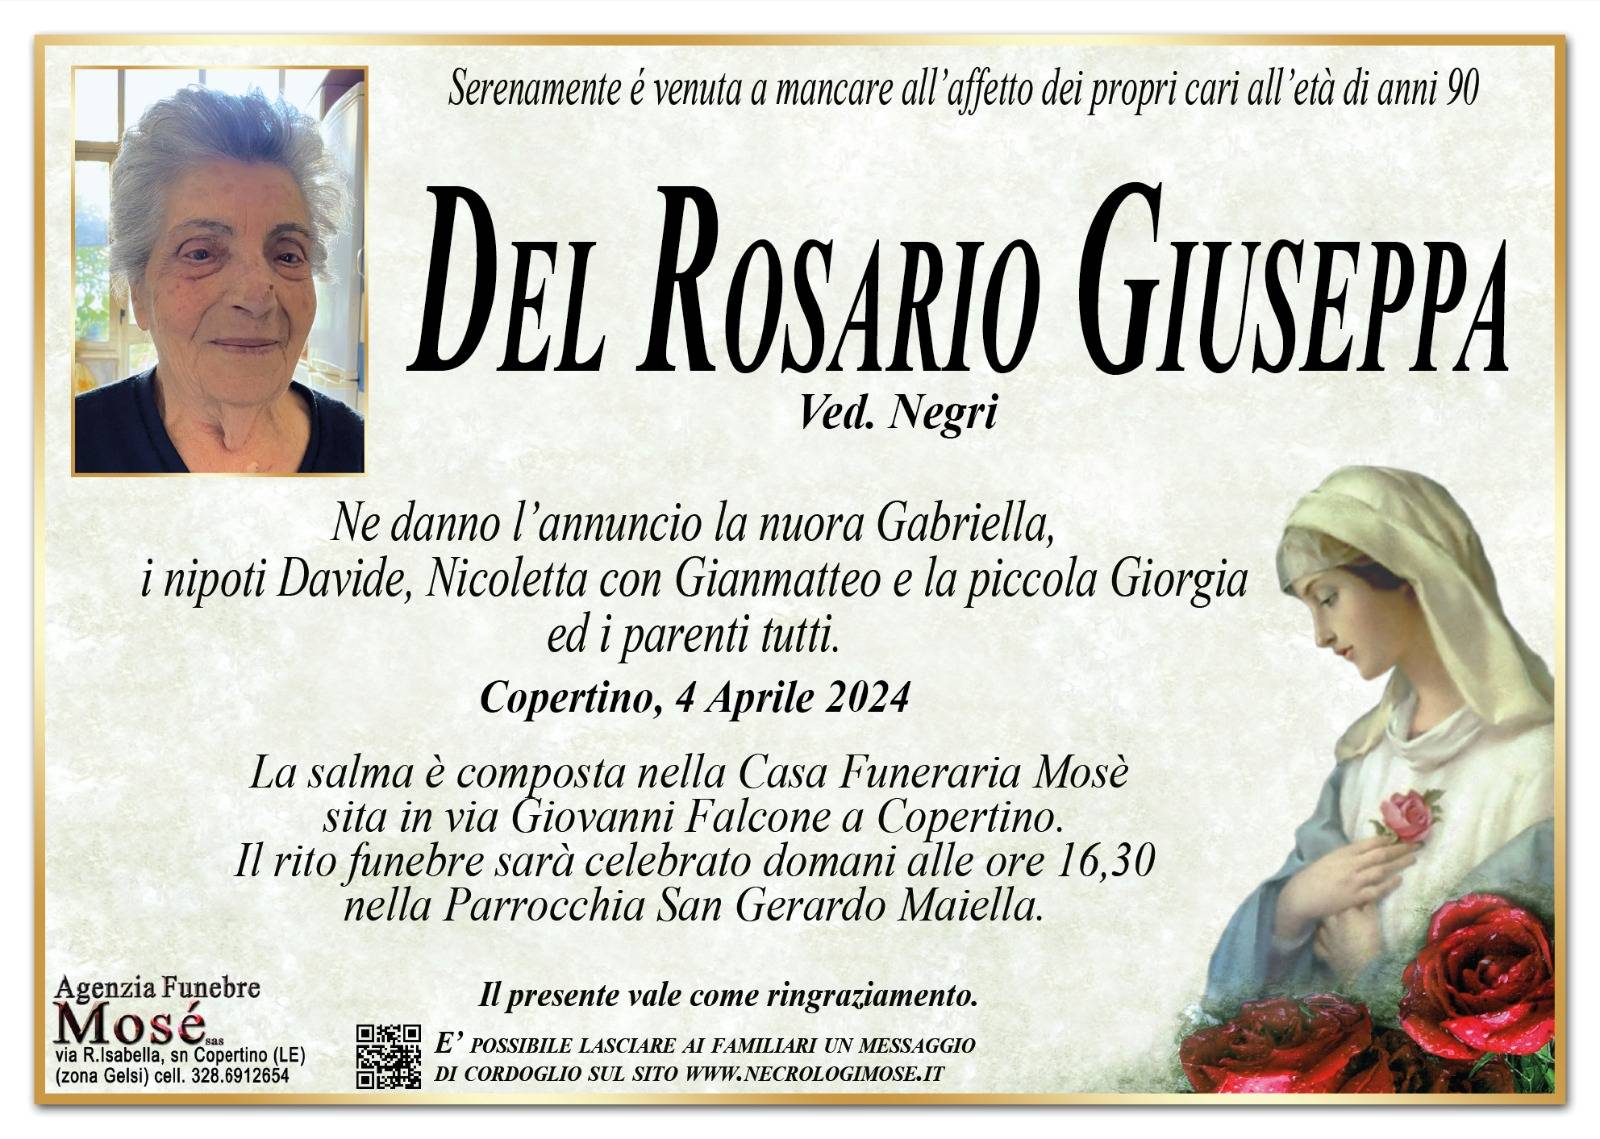 Giuseppa Del Rosario